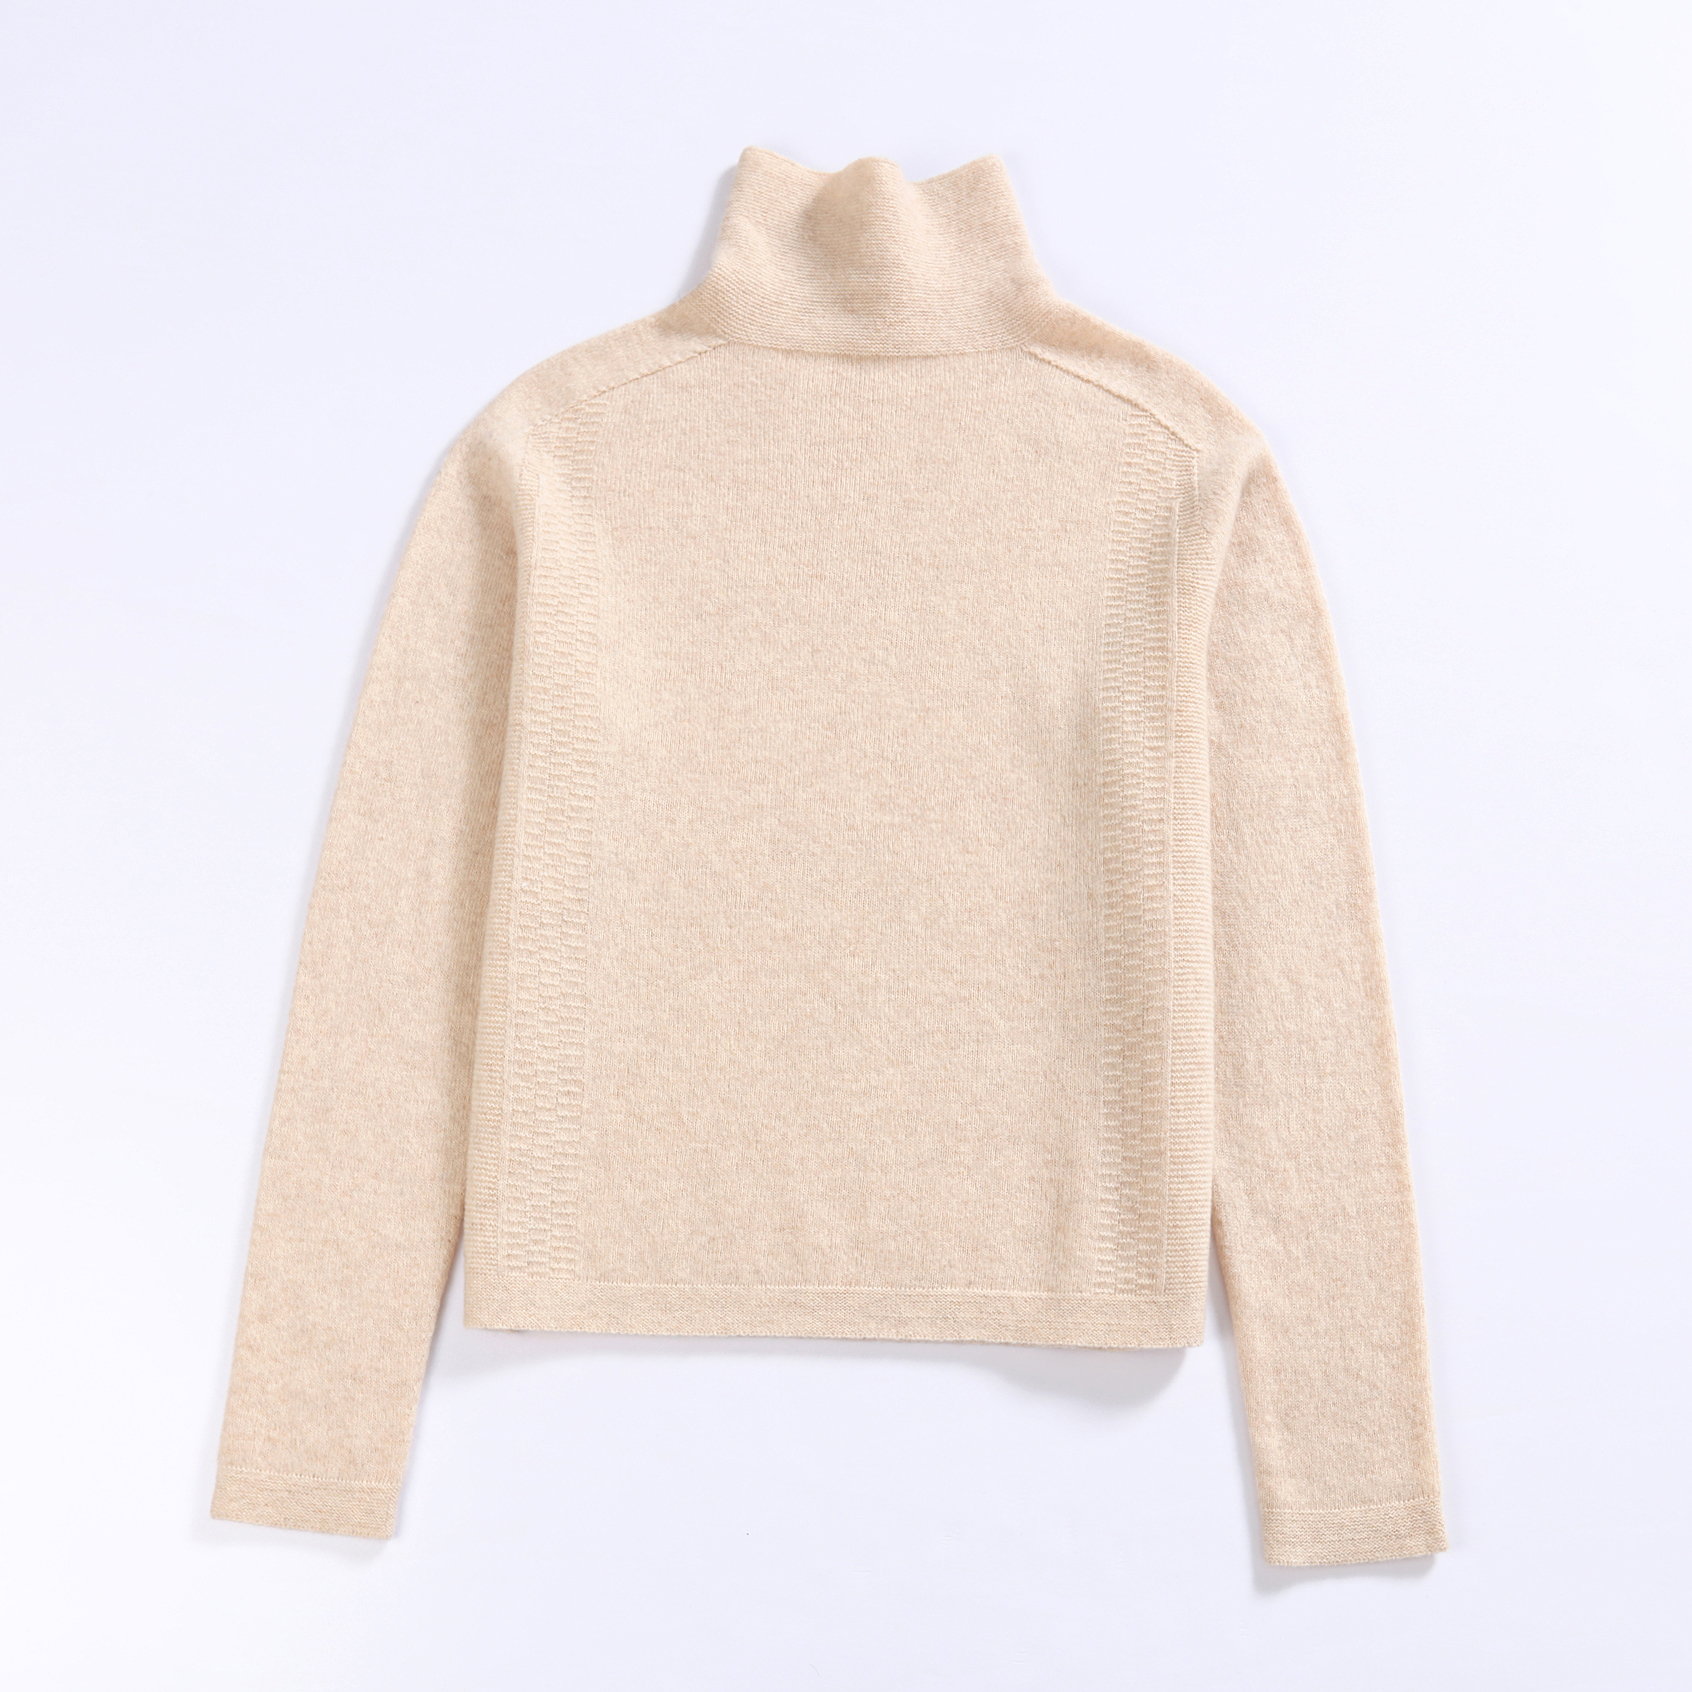 100% Merino Wool Sweater for Women